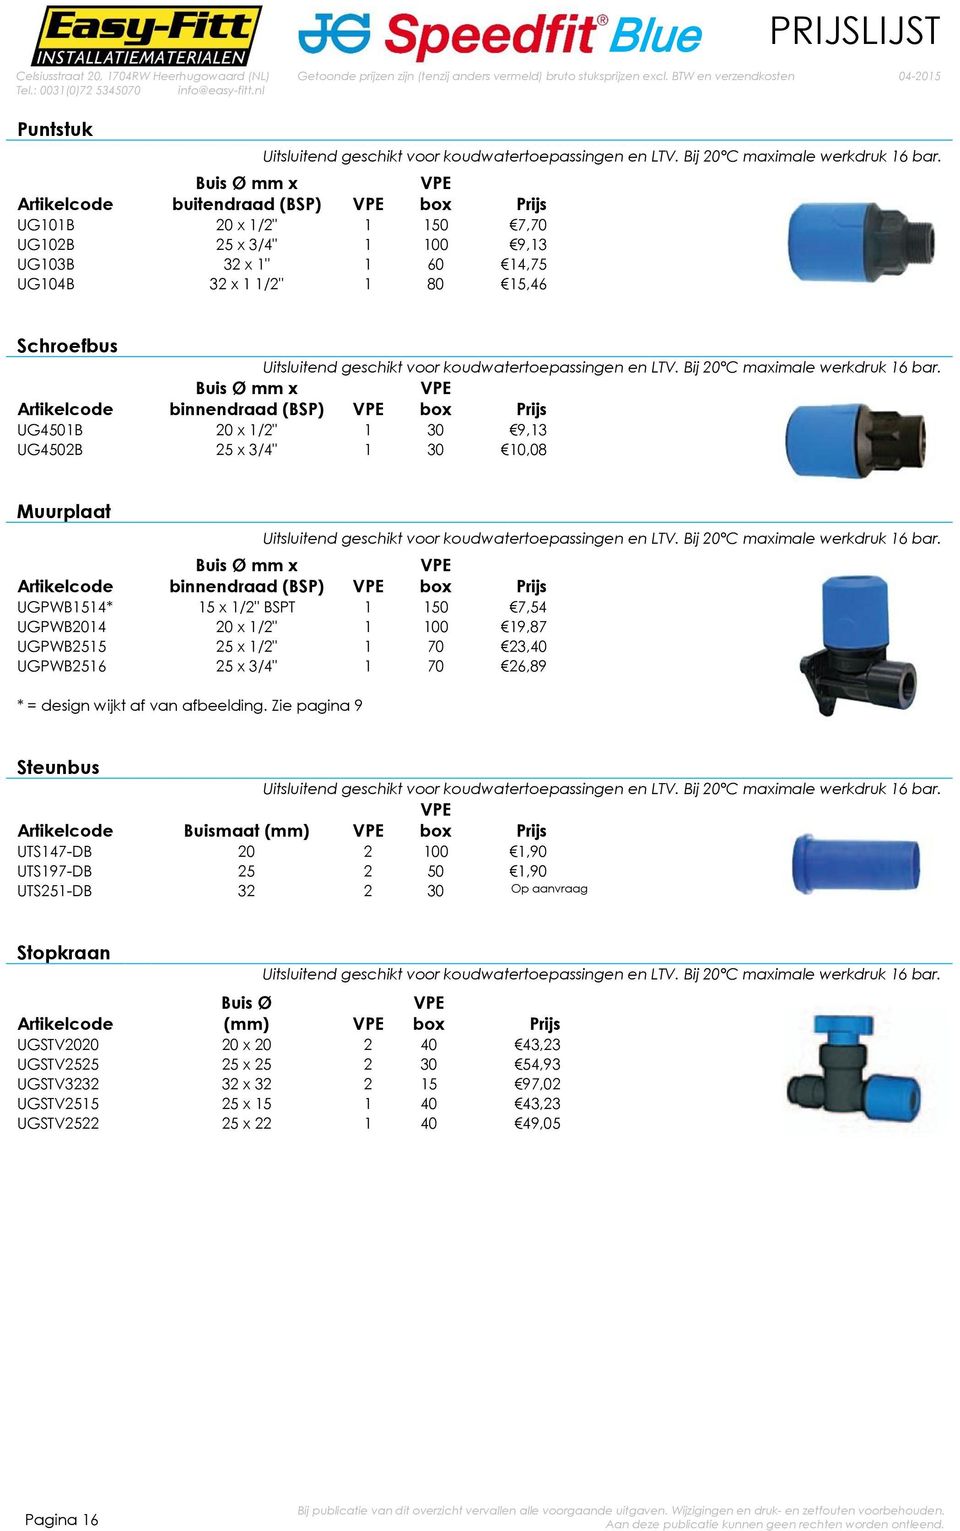 LTV. Bij 20 C maximale werkdruk 16 bar. mm x binnendraad (BSP) UG4501B 20 x 1/2" 1 30 9,13 UG4502B 25 x 3/4" 1 30 10,08 Muurplaat Uitsluitend geschikt voor koudwatertoepassingen en LTV.